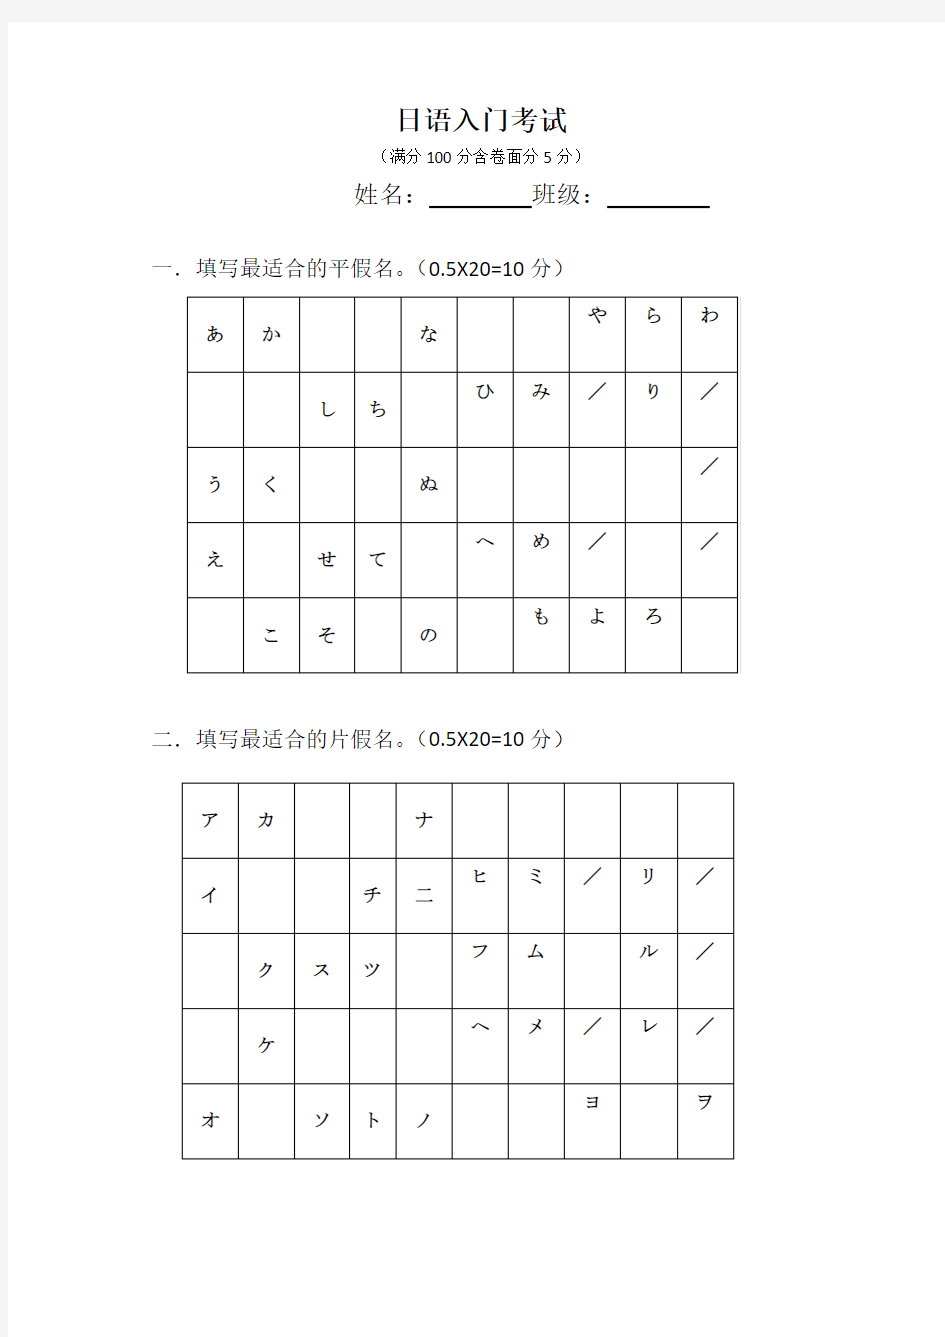 日语入门测试卷(五十音图)